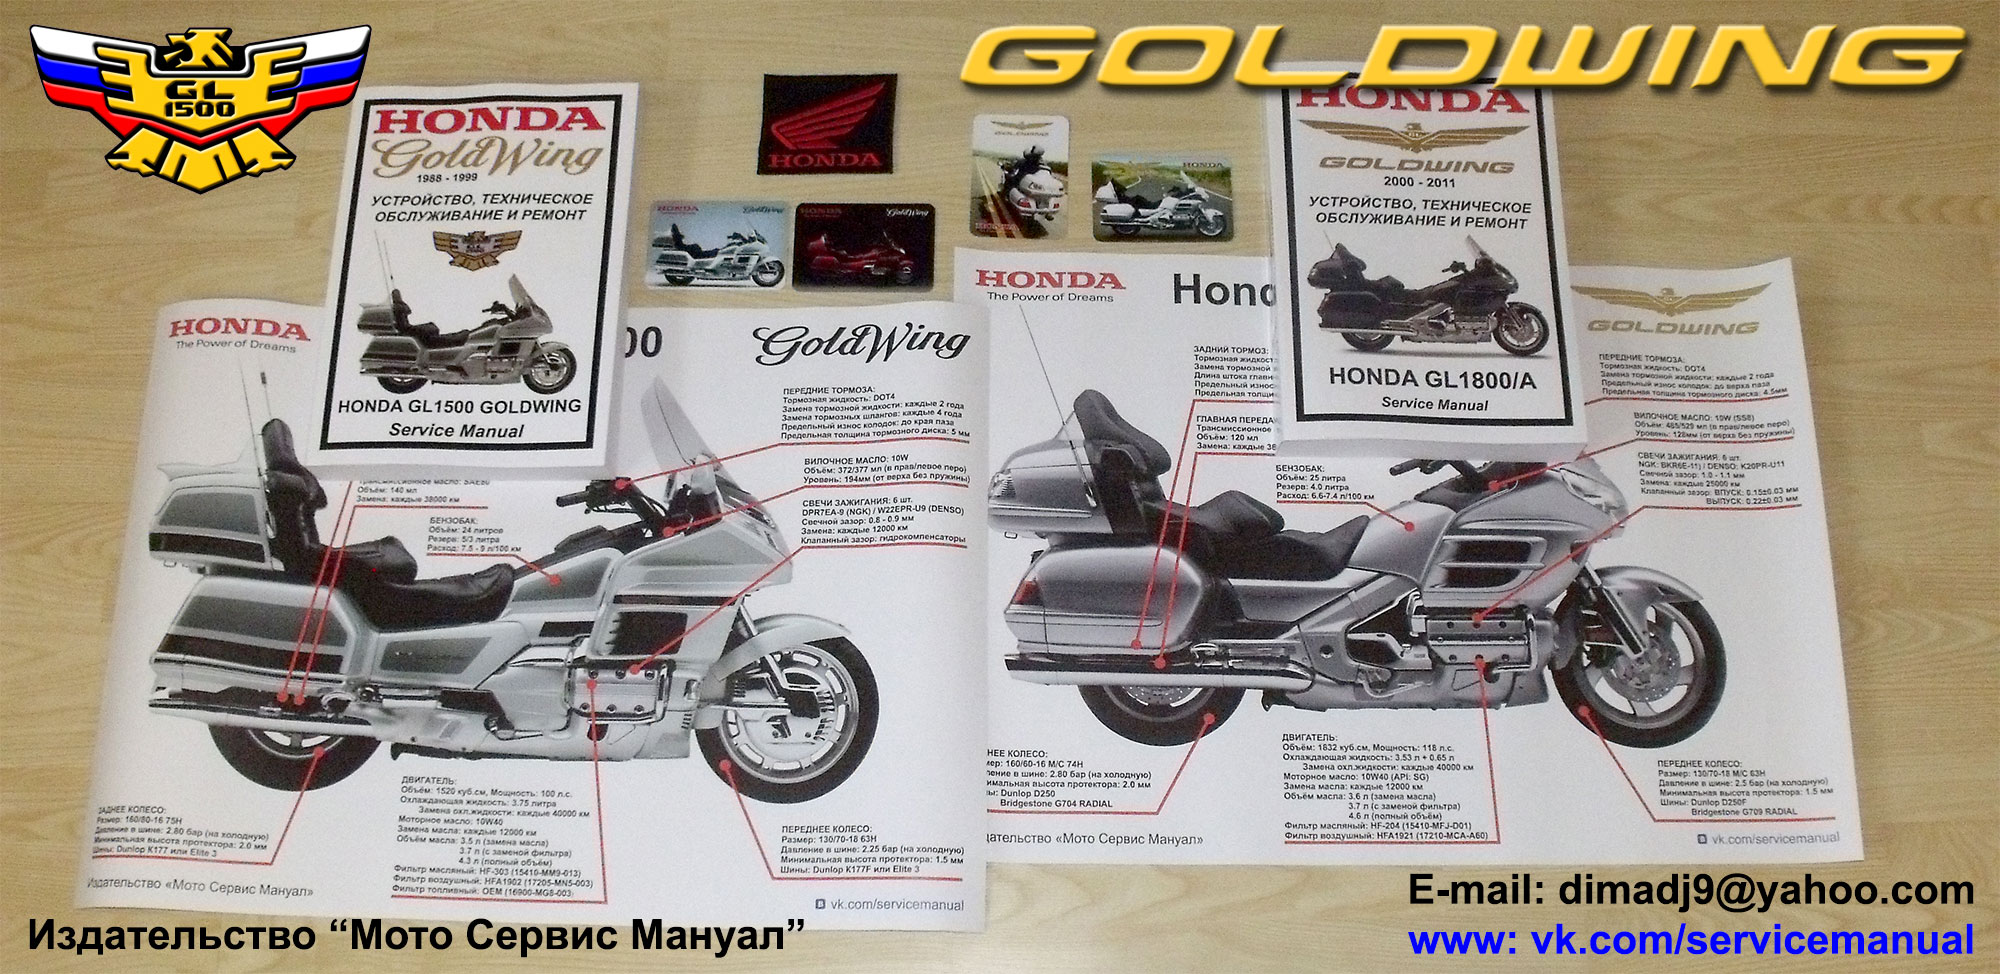 Мануалы и документация для Honda GL1500 Gold Wing